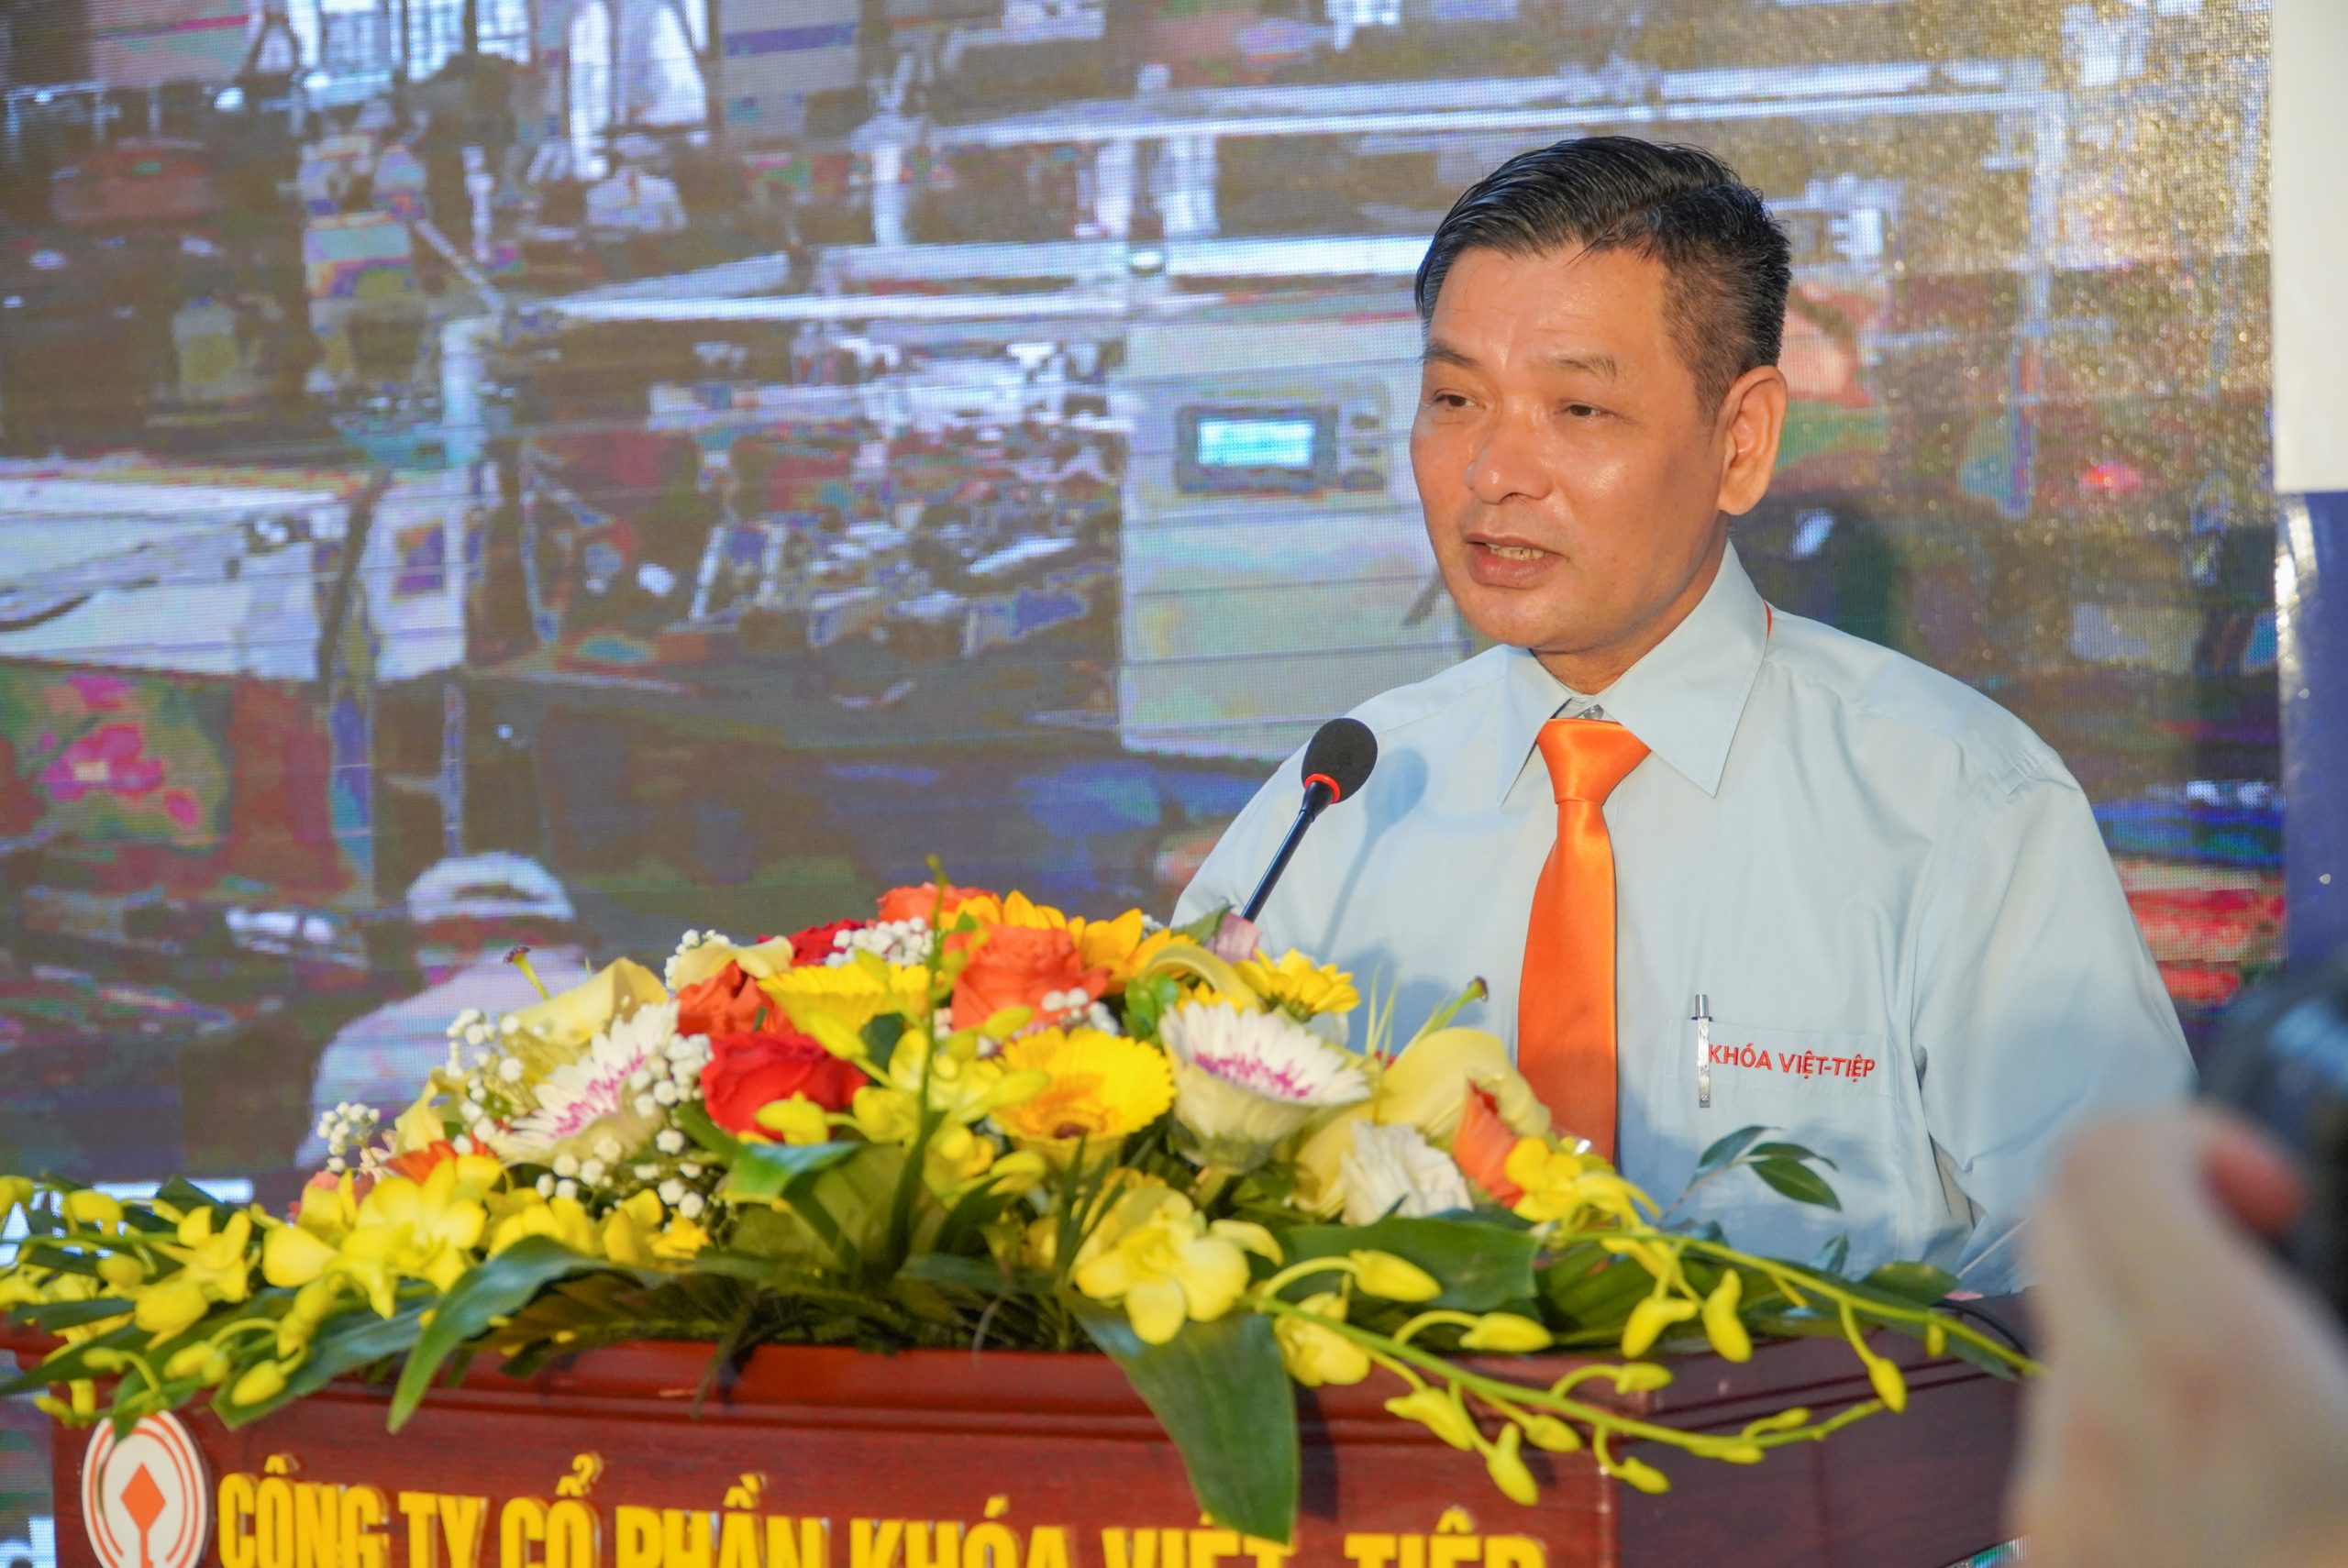 Ông Lương Văn Thắng - Công ty Khoá Việt-Tiệp